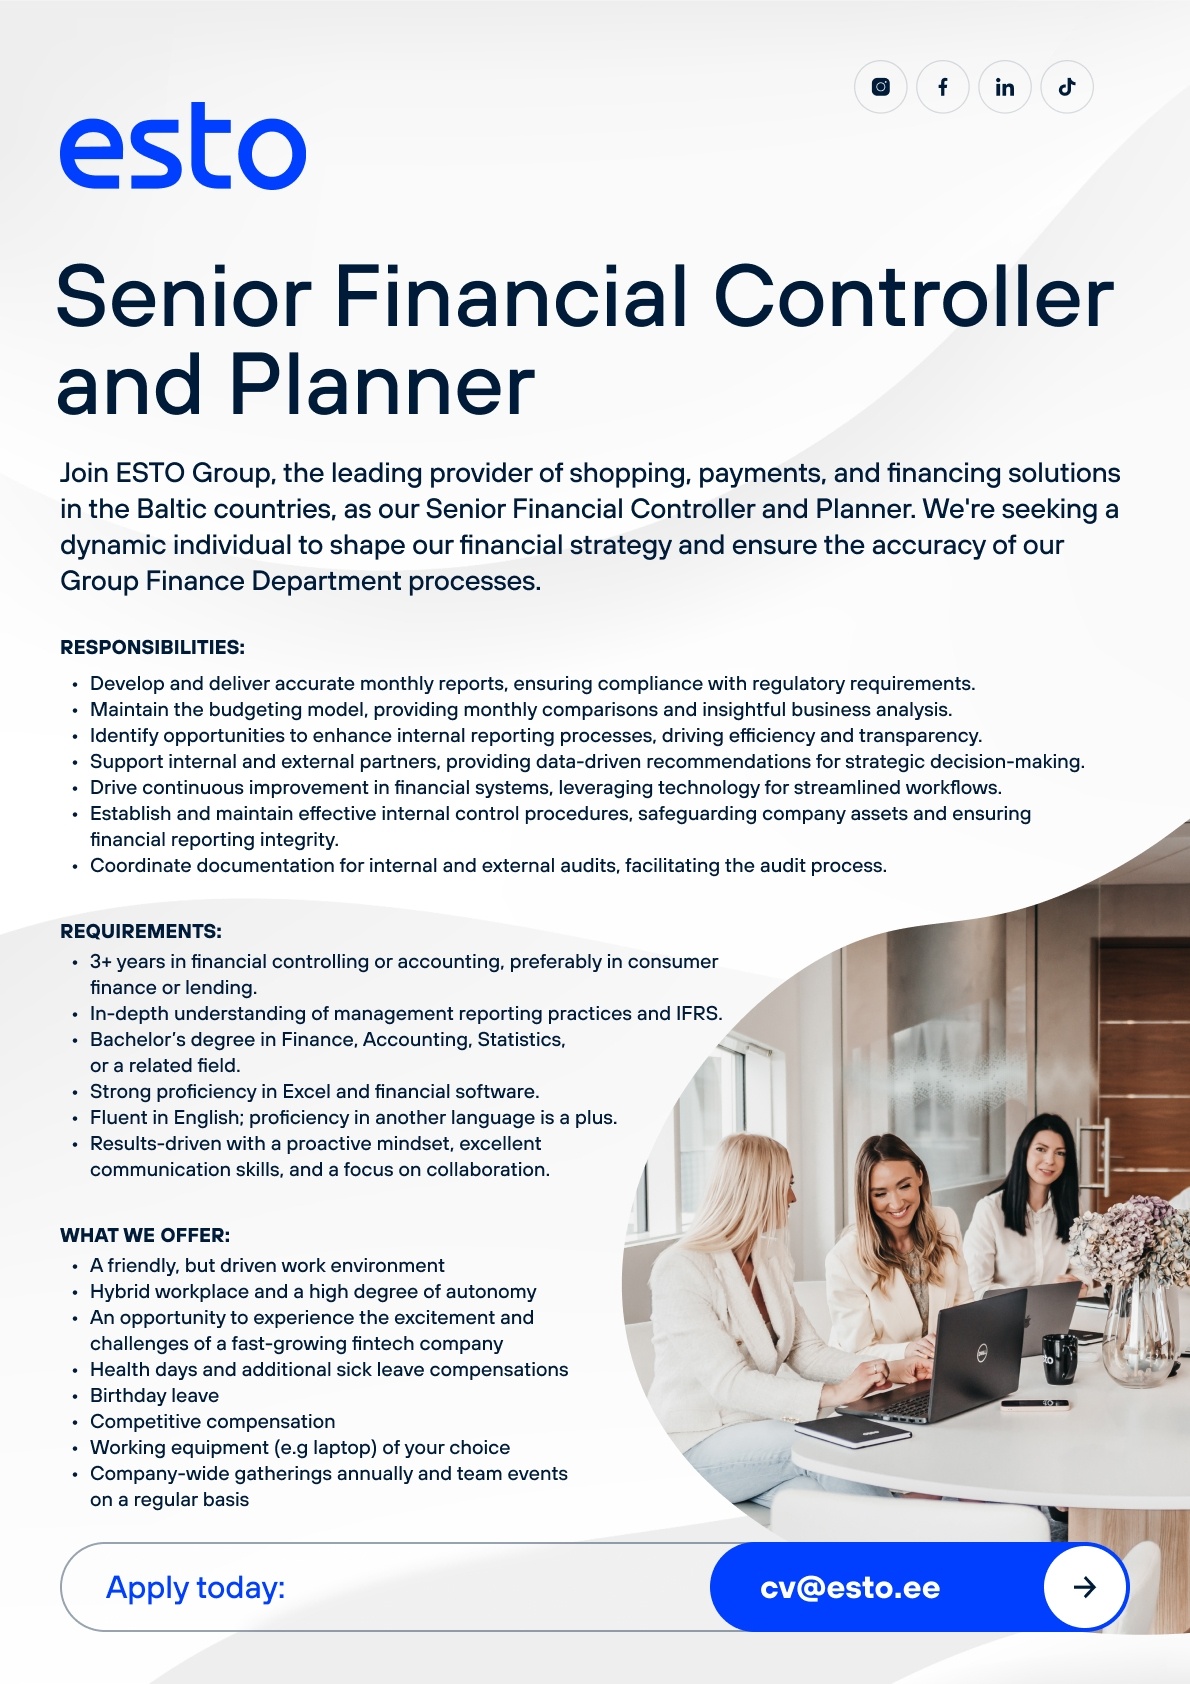 ESTO AS Senior Financial Controller and Planner